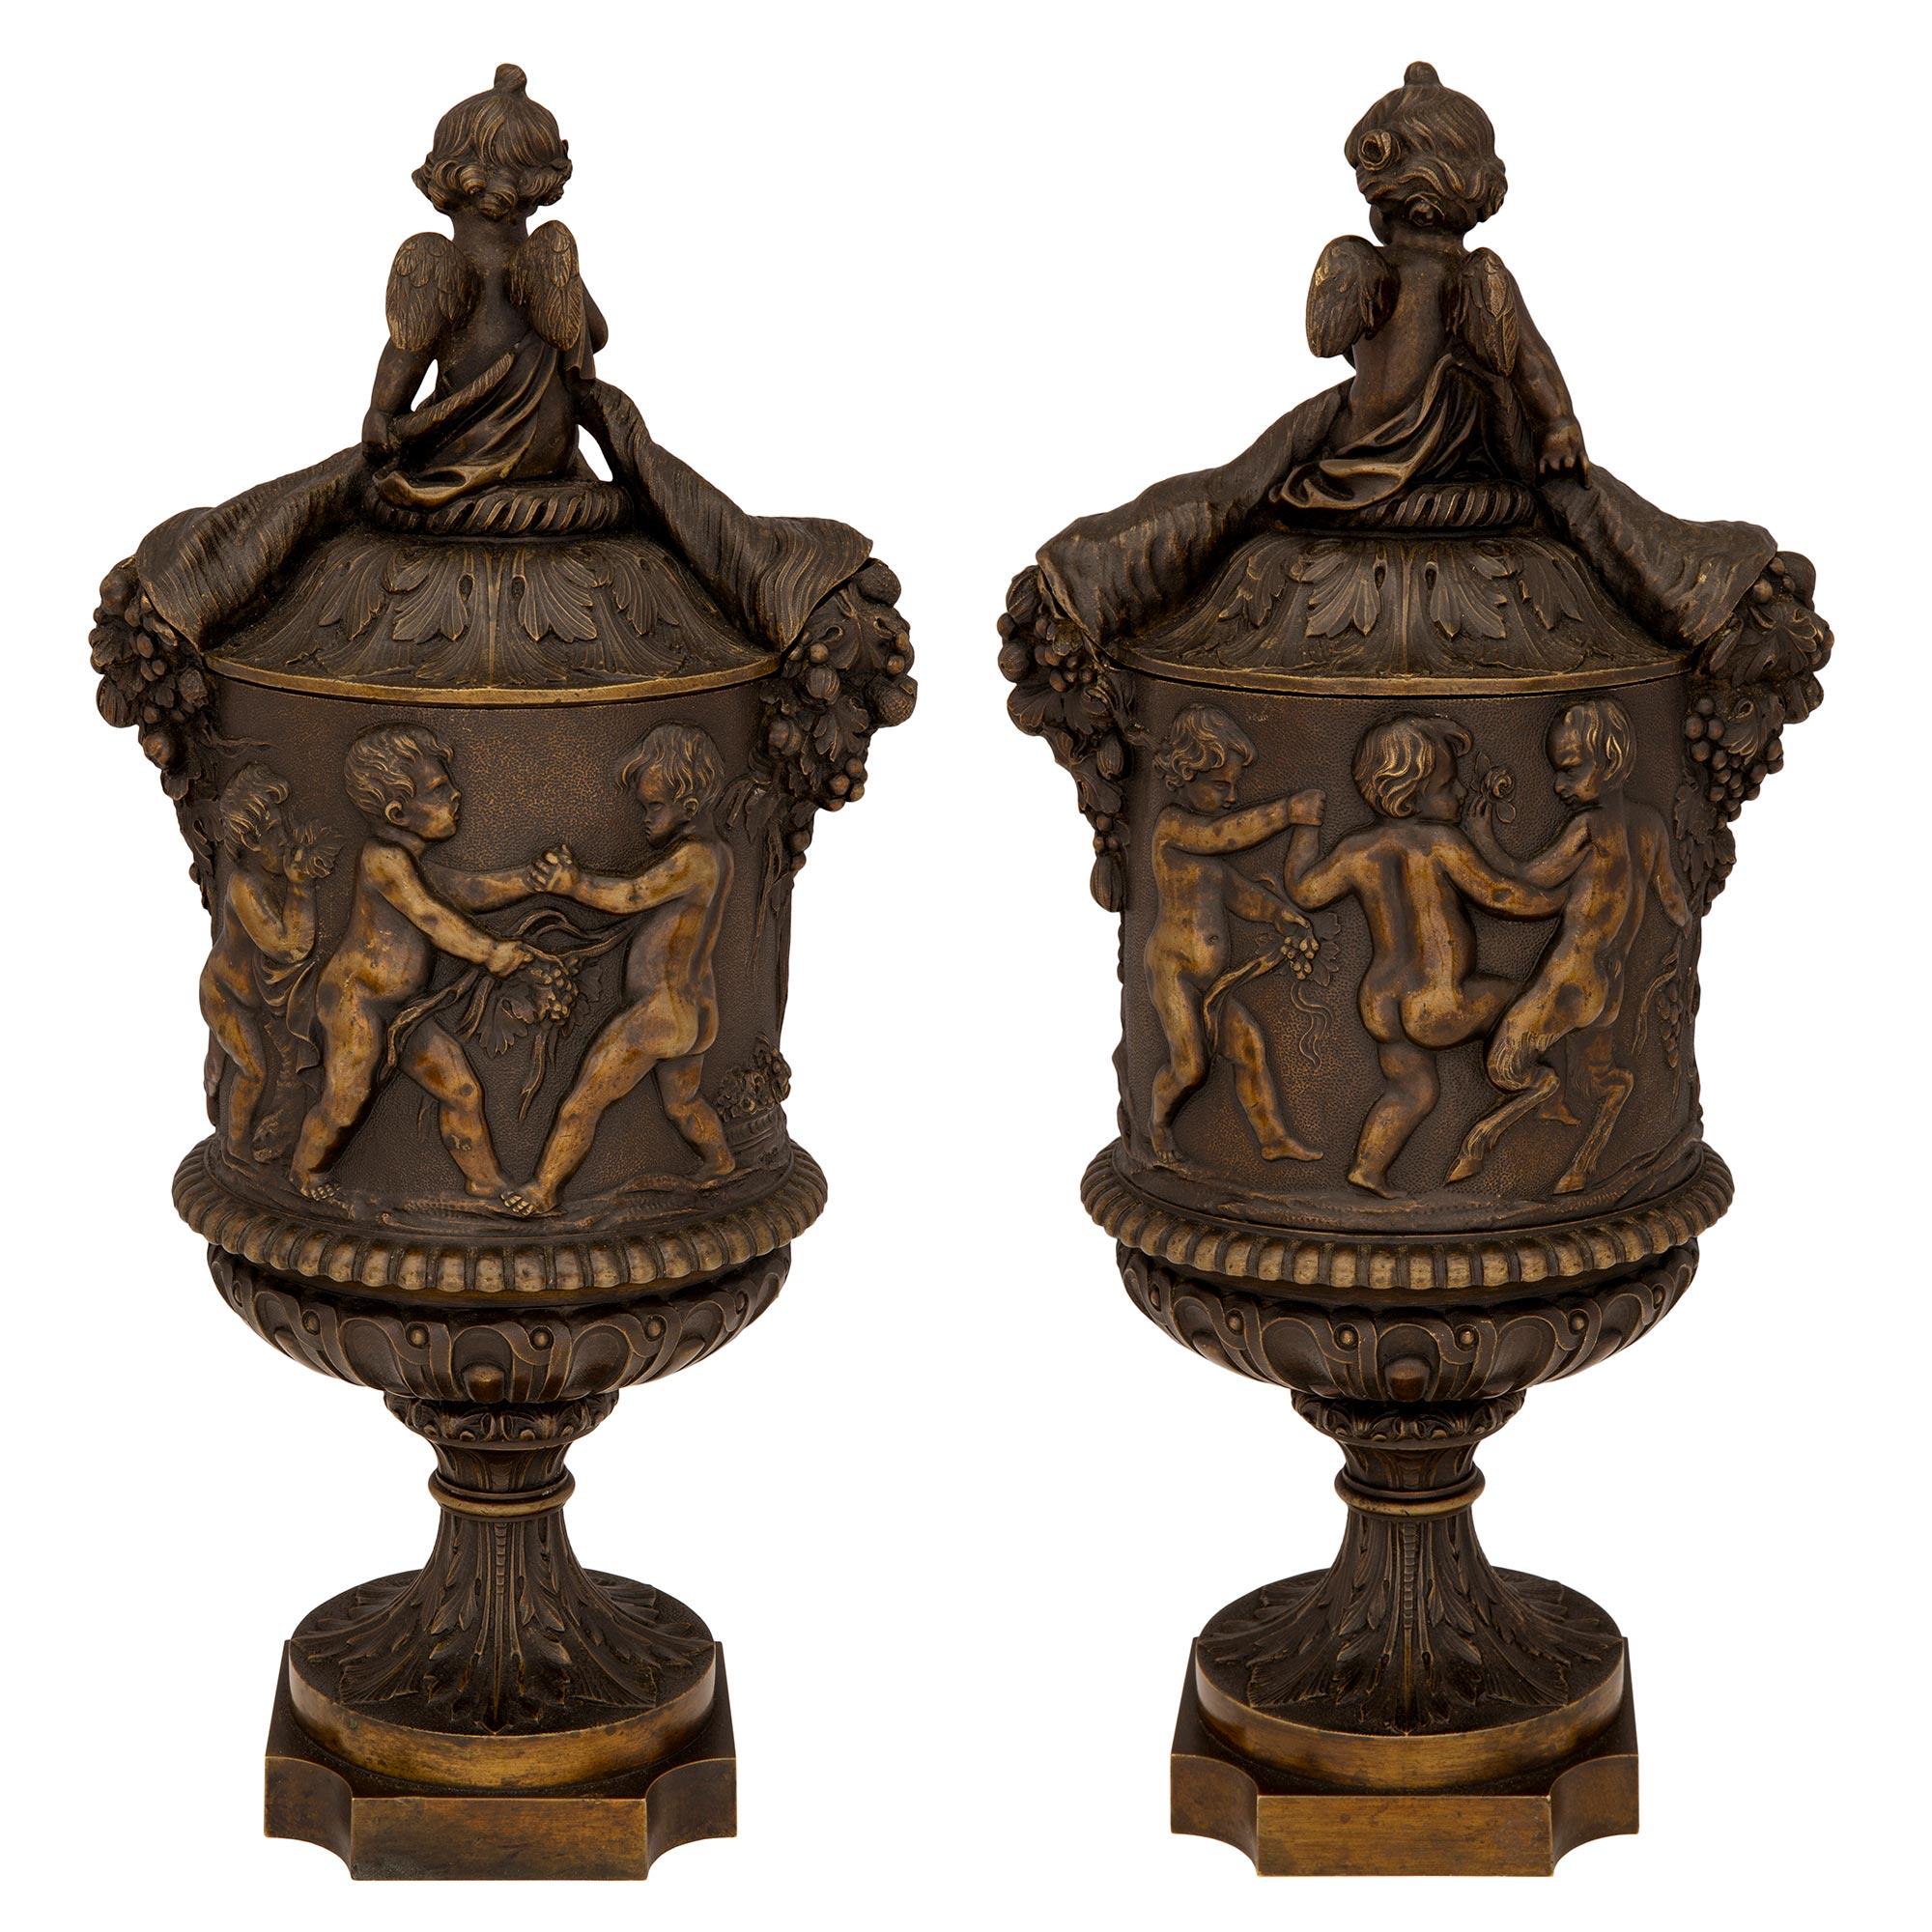 Charmante paire d'urnes à couvercle en bronze patiné de style Renaissance du XIXe siècle, attribuée à Auguste-Maximilien Delafontaine. Chaque urne est surélevée par une base carrée aux angles concaves et un piédestal à socle fin. Les corps